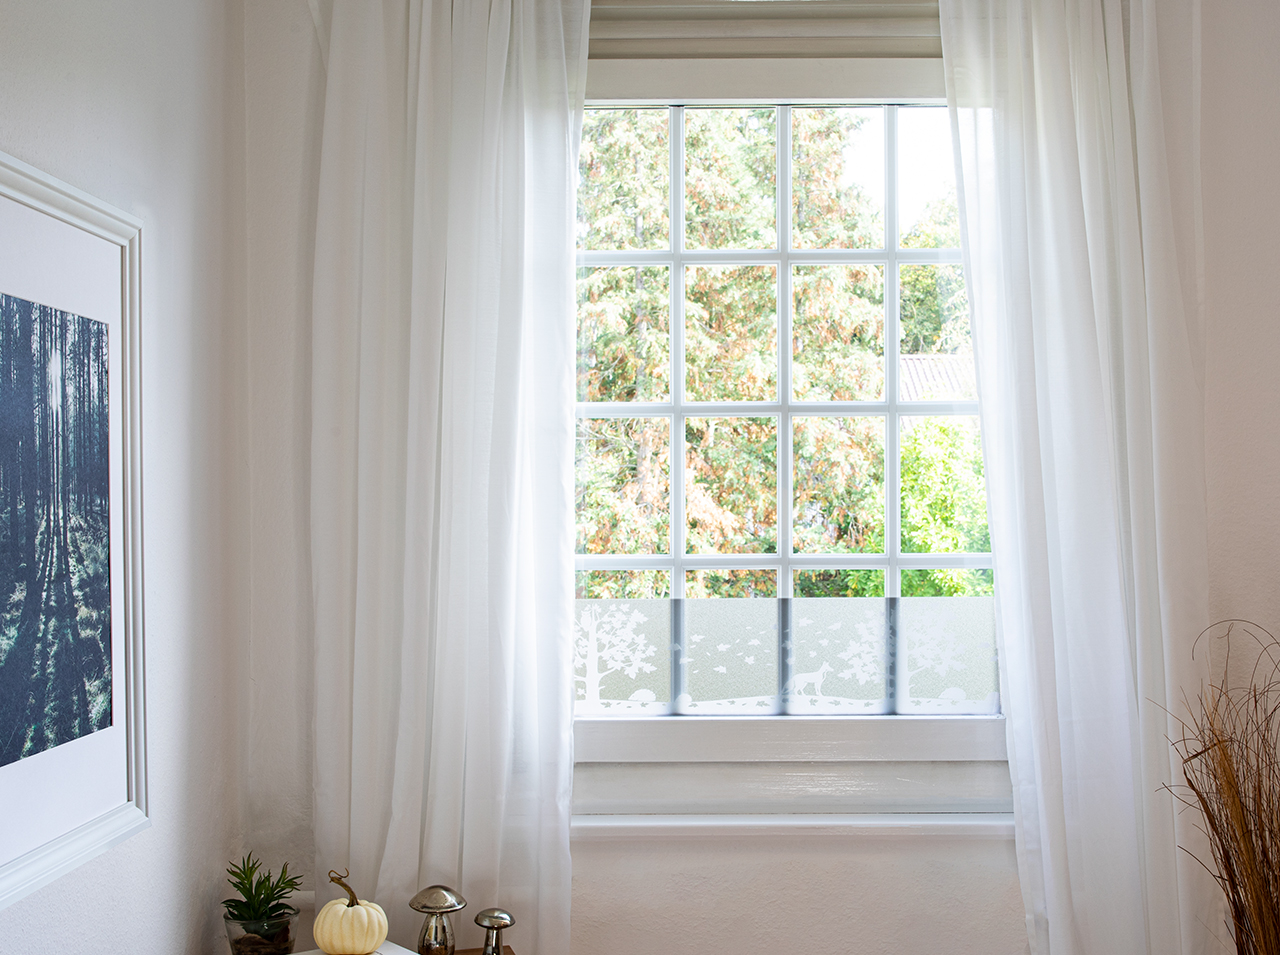 Fensterfolie mit der Silhouette einer Waldlandschaft in Weiß als Dekoration am Fenster angebracht.